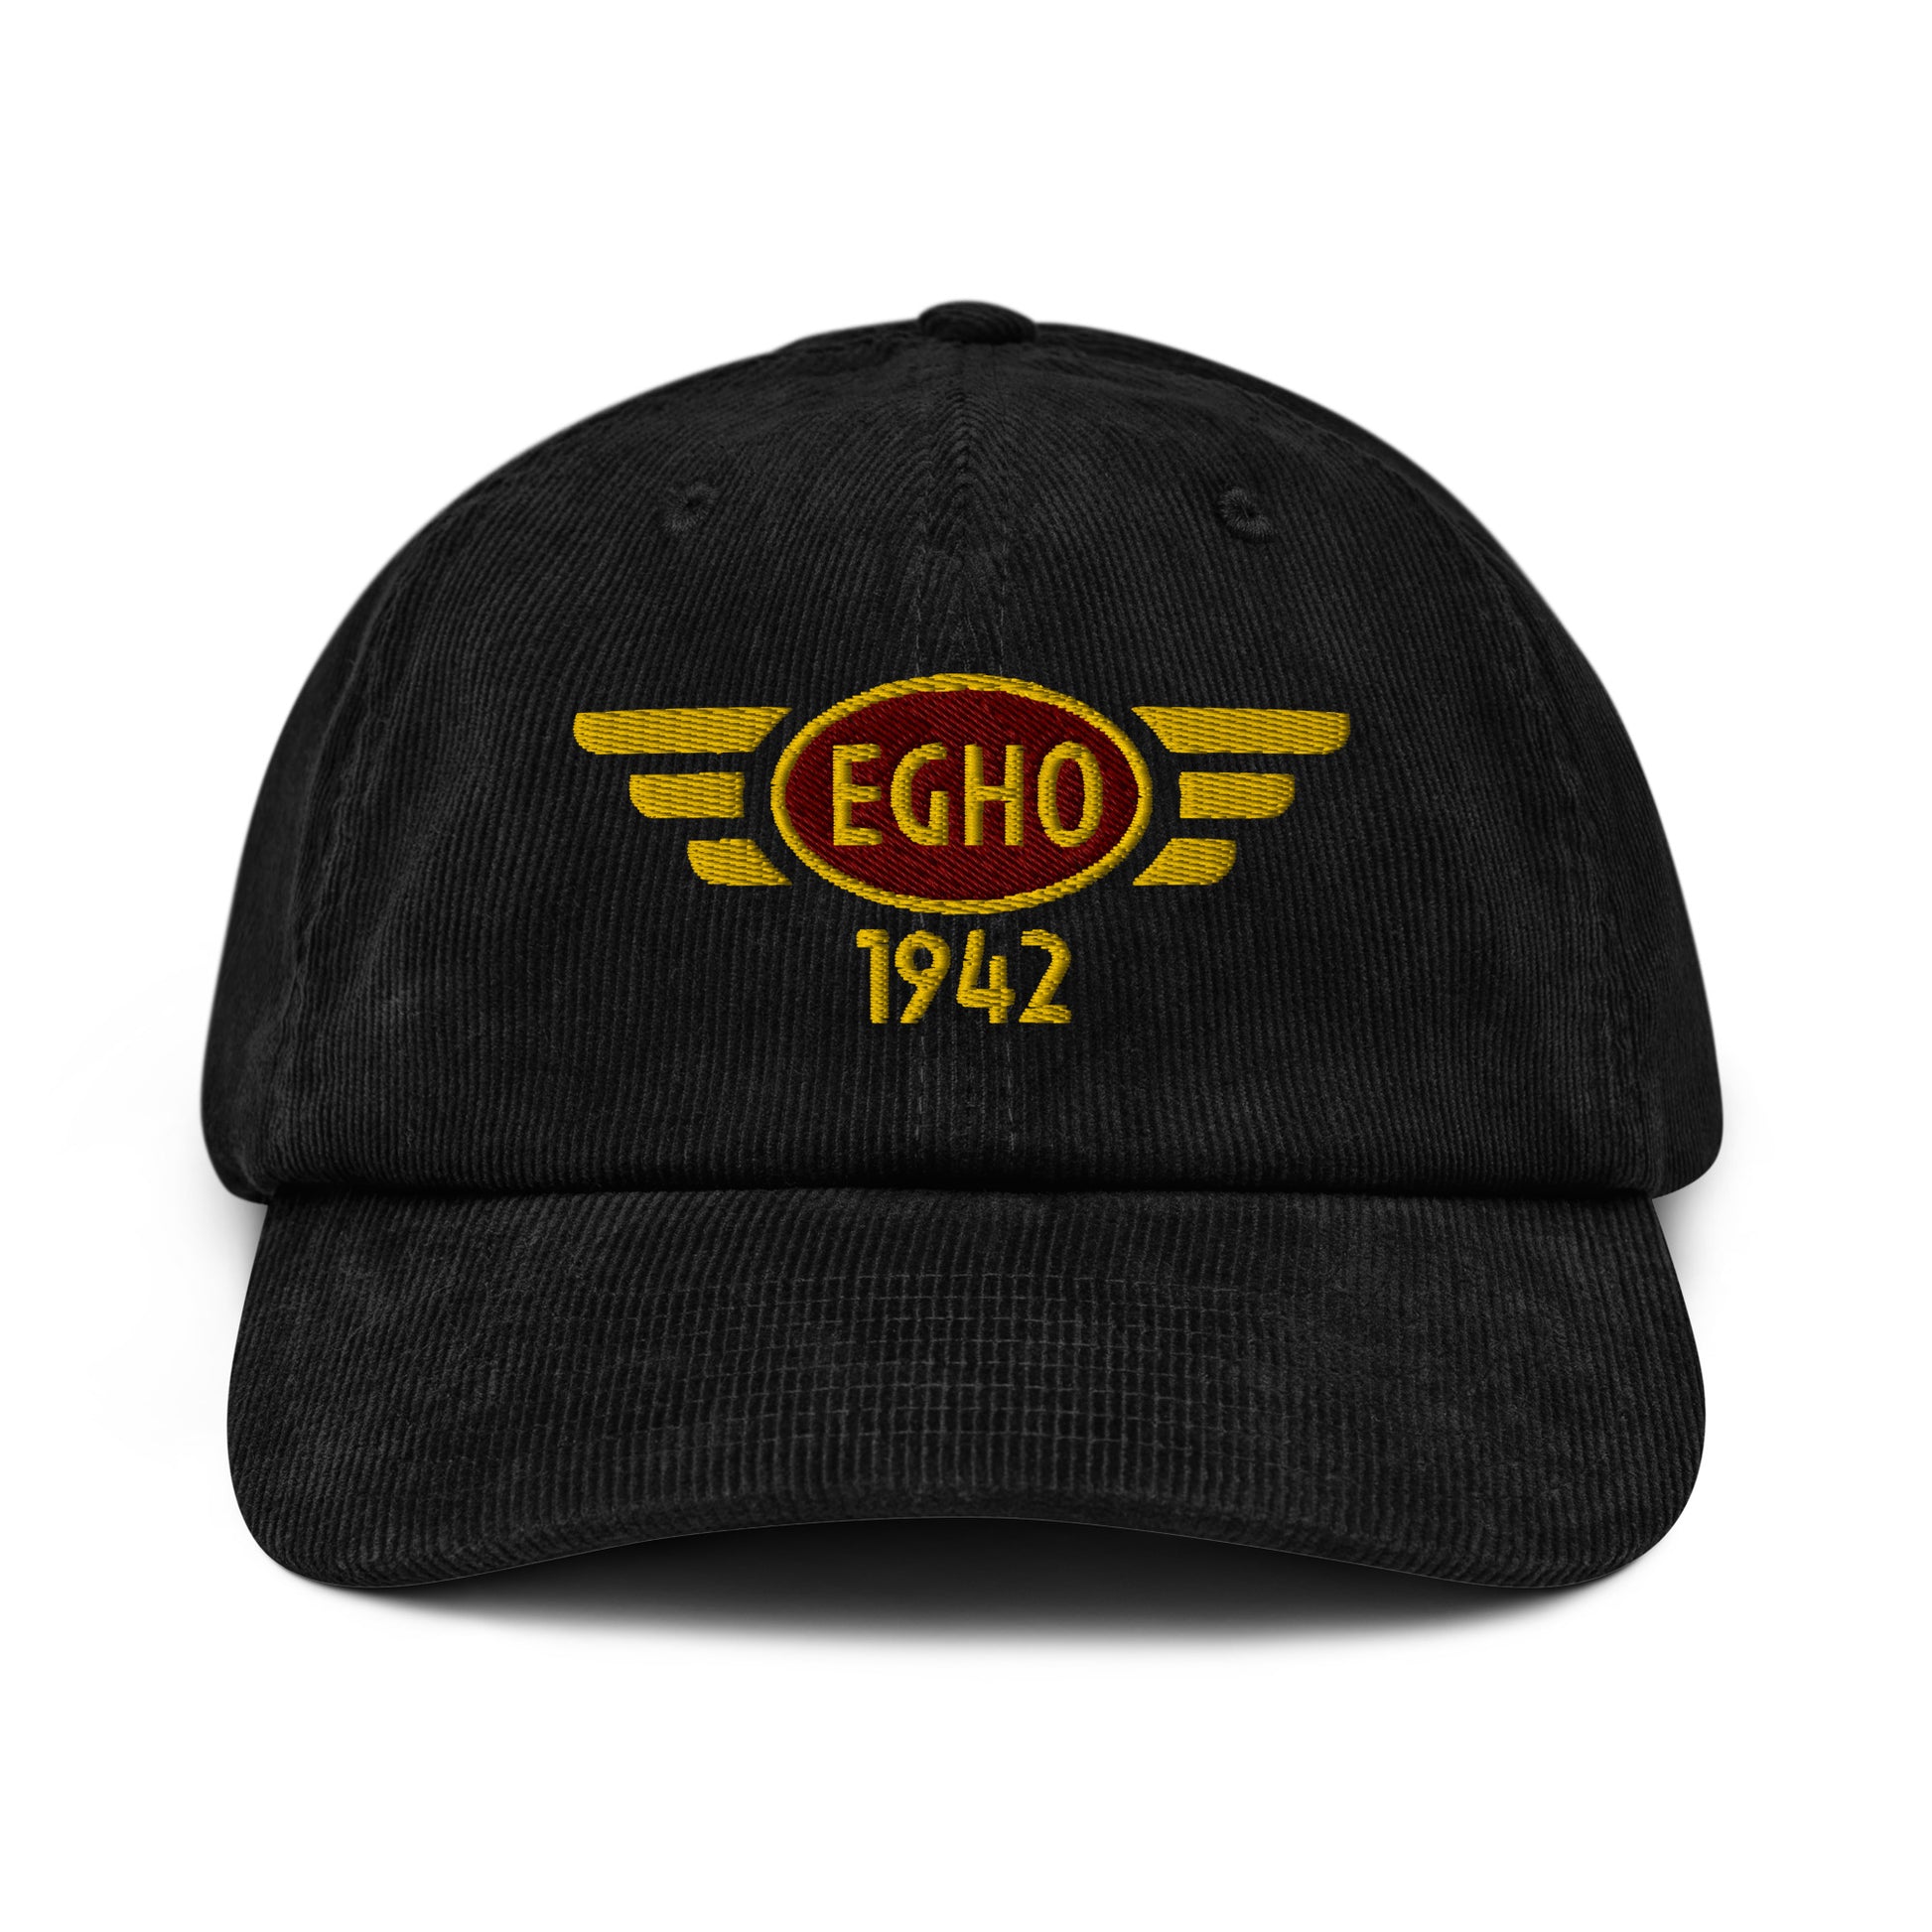 Black corduroy baseball cap with embroidered vintage style aviation logo for Thruxton Aerodrome.